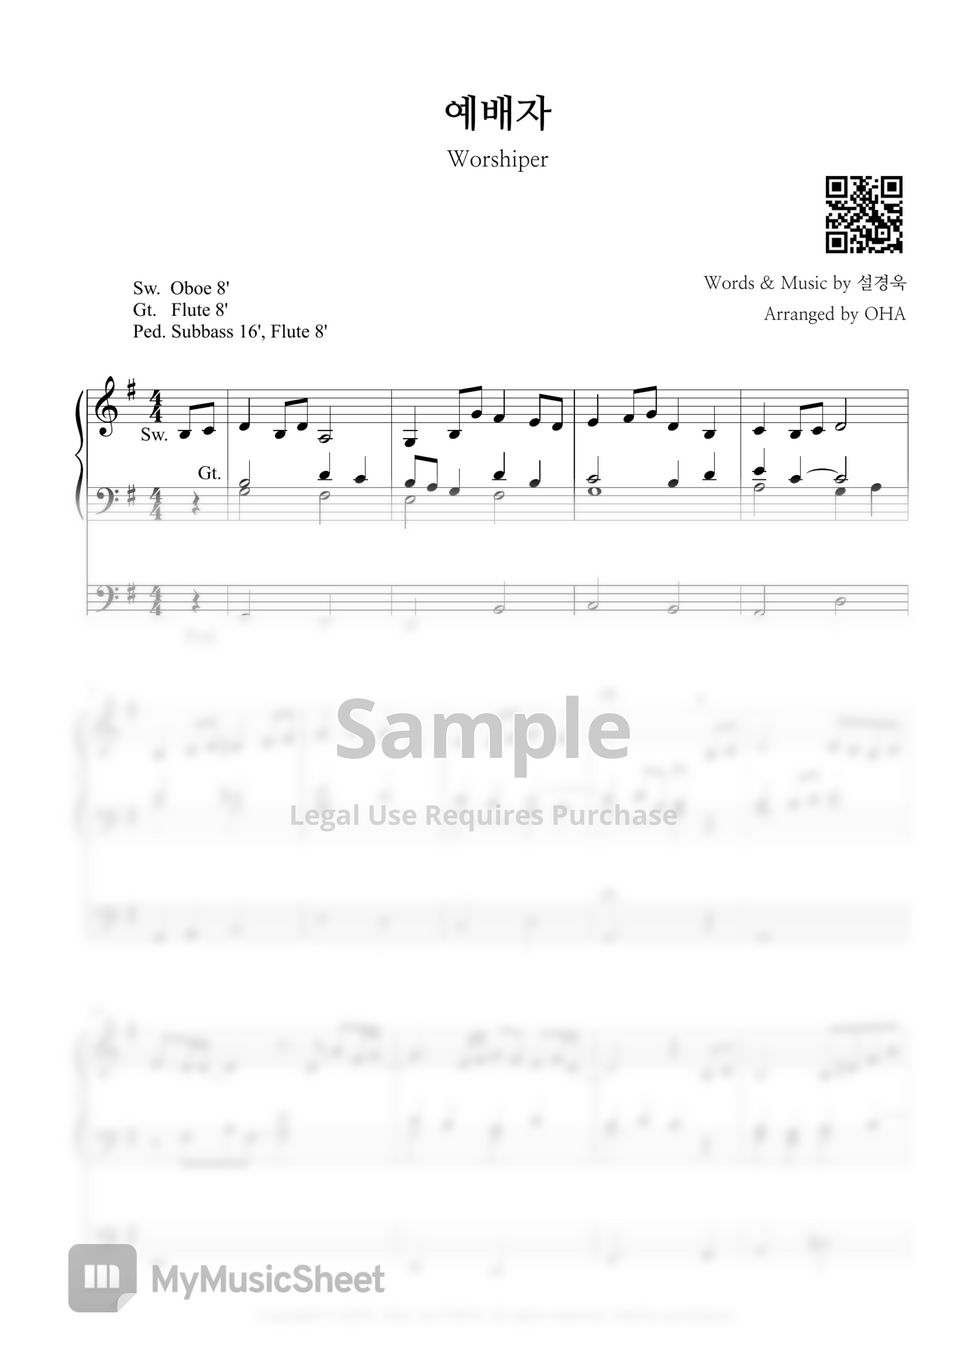 설경욱 - Worshiper (Organ Prelude) by OHA